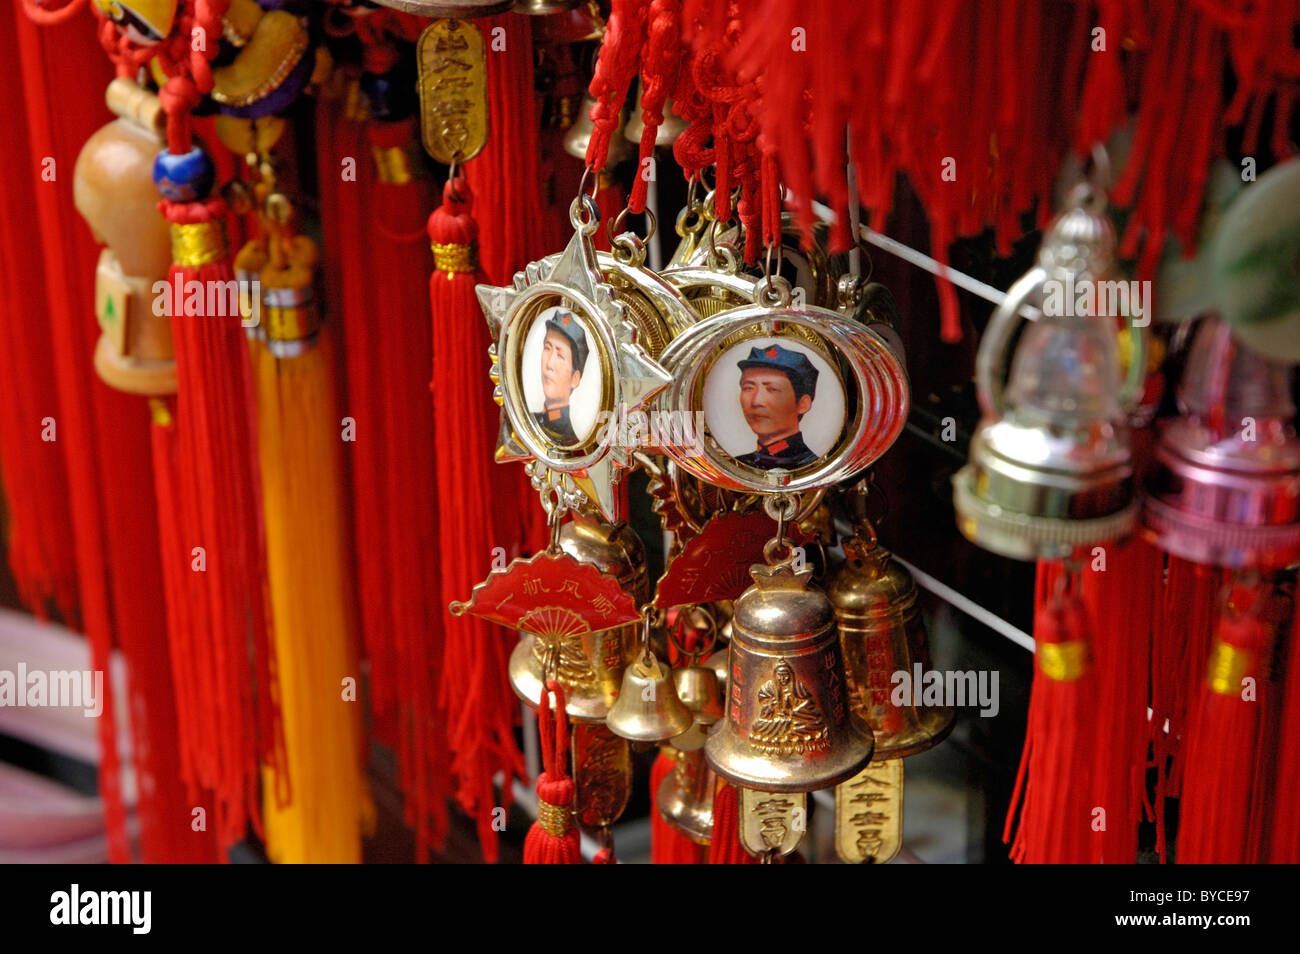 Negozio di souvenir Chia - Mao Zedong / di Mao Tse-tung medaglie appese in un souvenir in stallo al di fuori del parco Behai, Pechino, Cina. Foto Stock